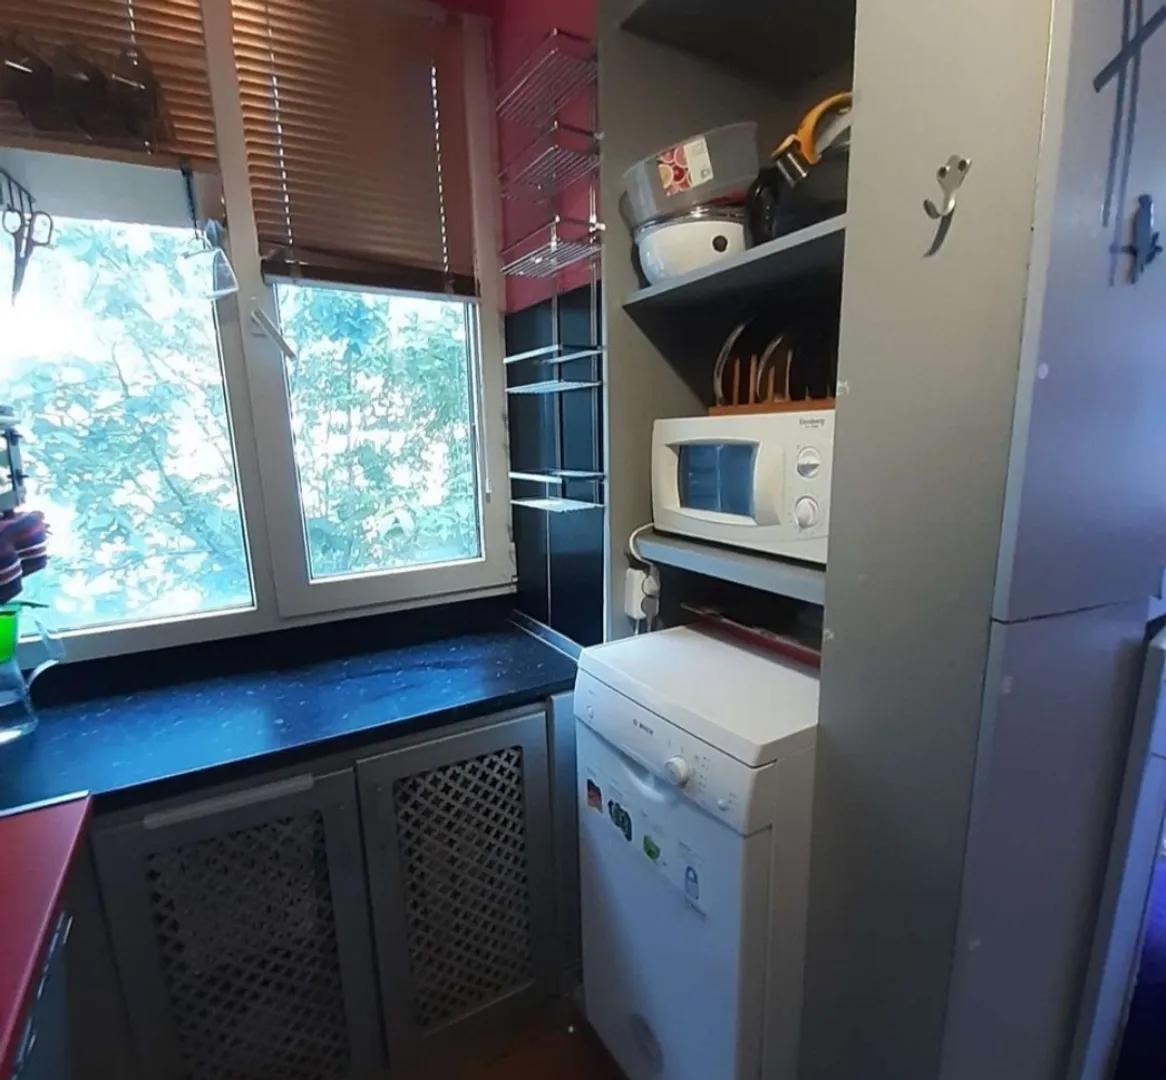 Кухонная зон,: посудомоечная машина, стол, окно, микроволновка, посуда, шкафы (2)